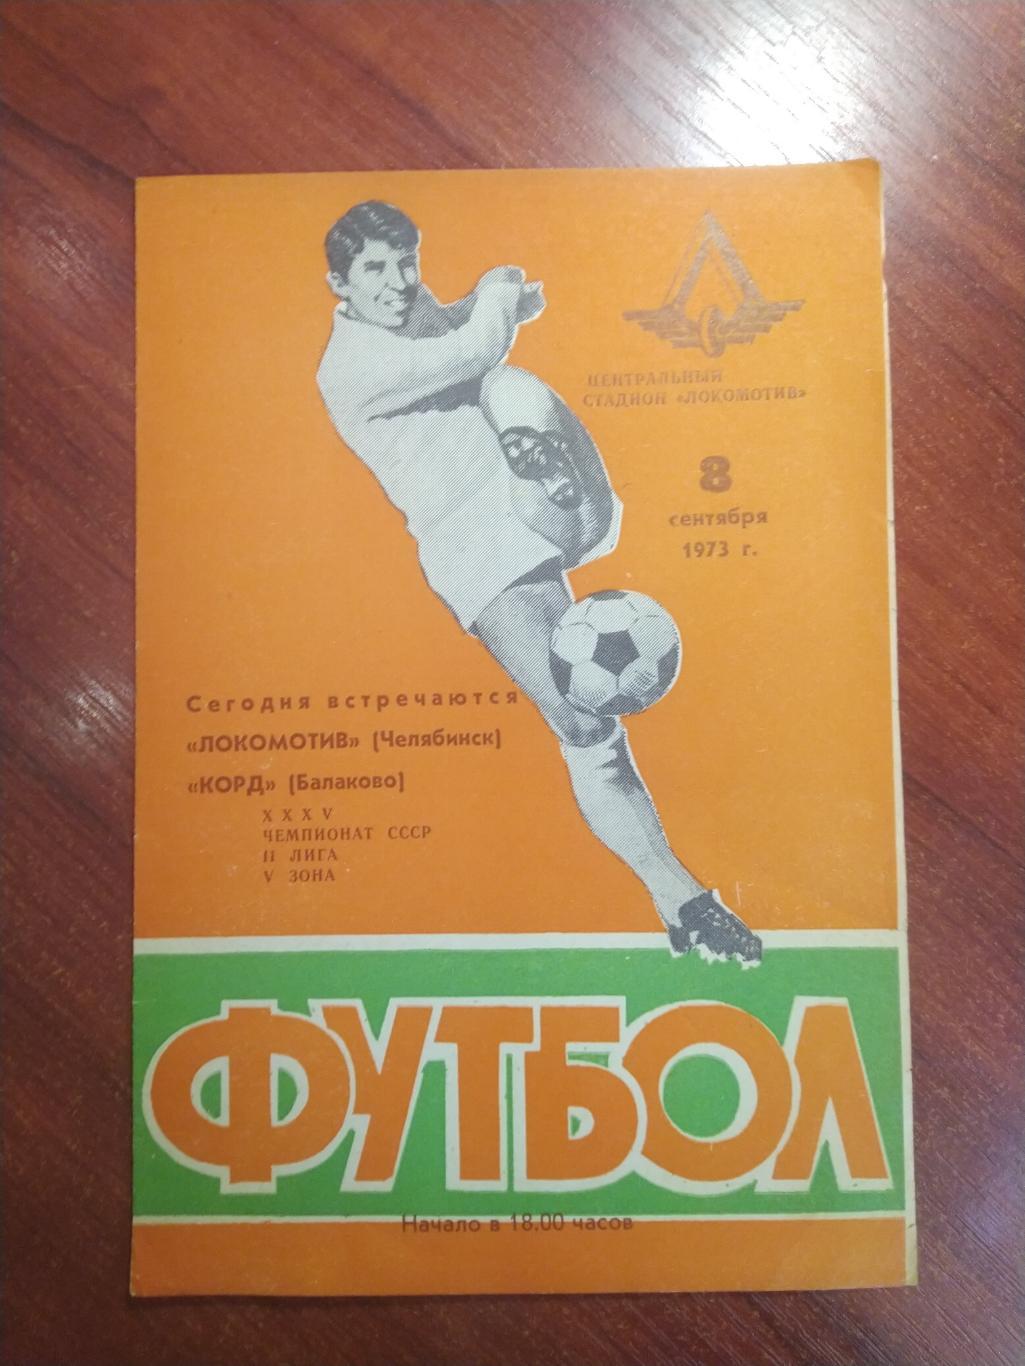 Локомотив Челябинск -Корд Балаково 1973